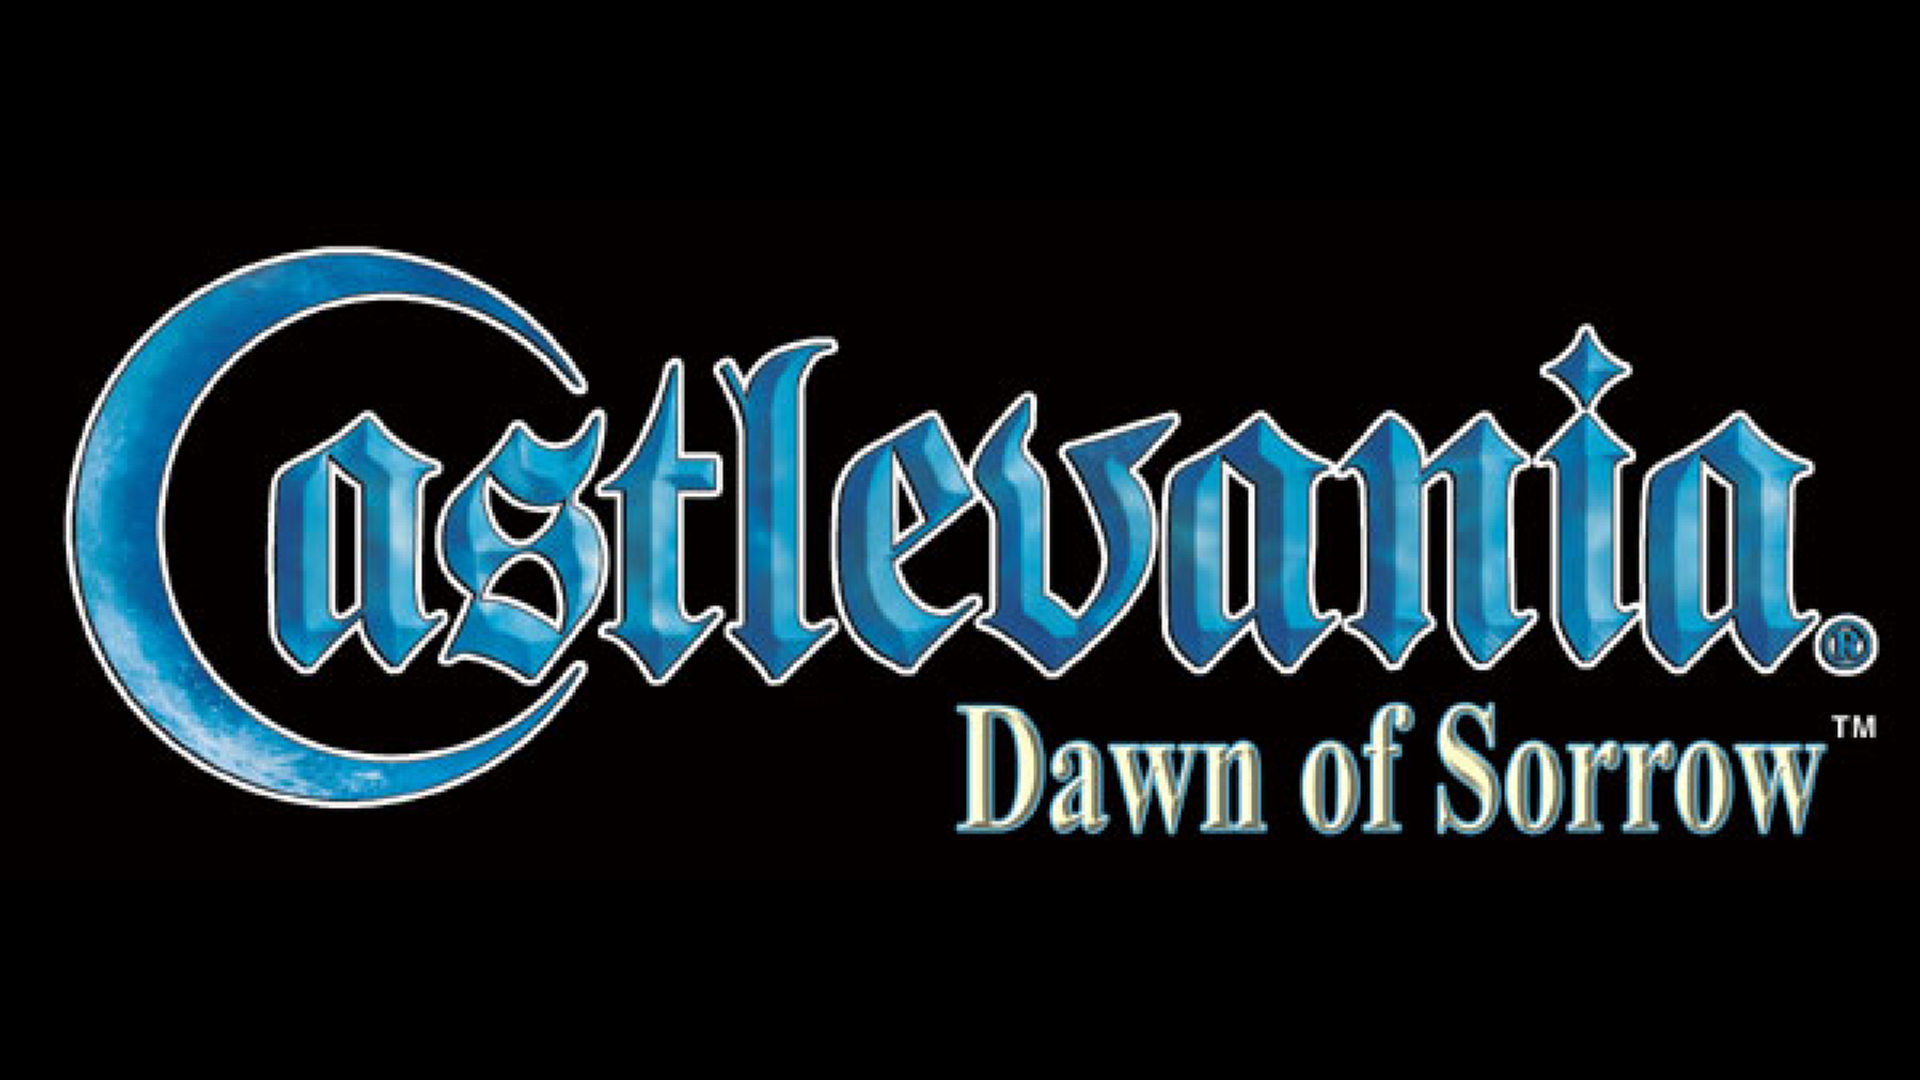 Castlevania: Dawn Of Sorrow Logo